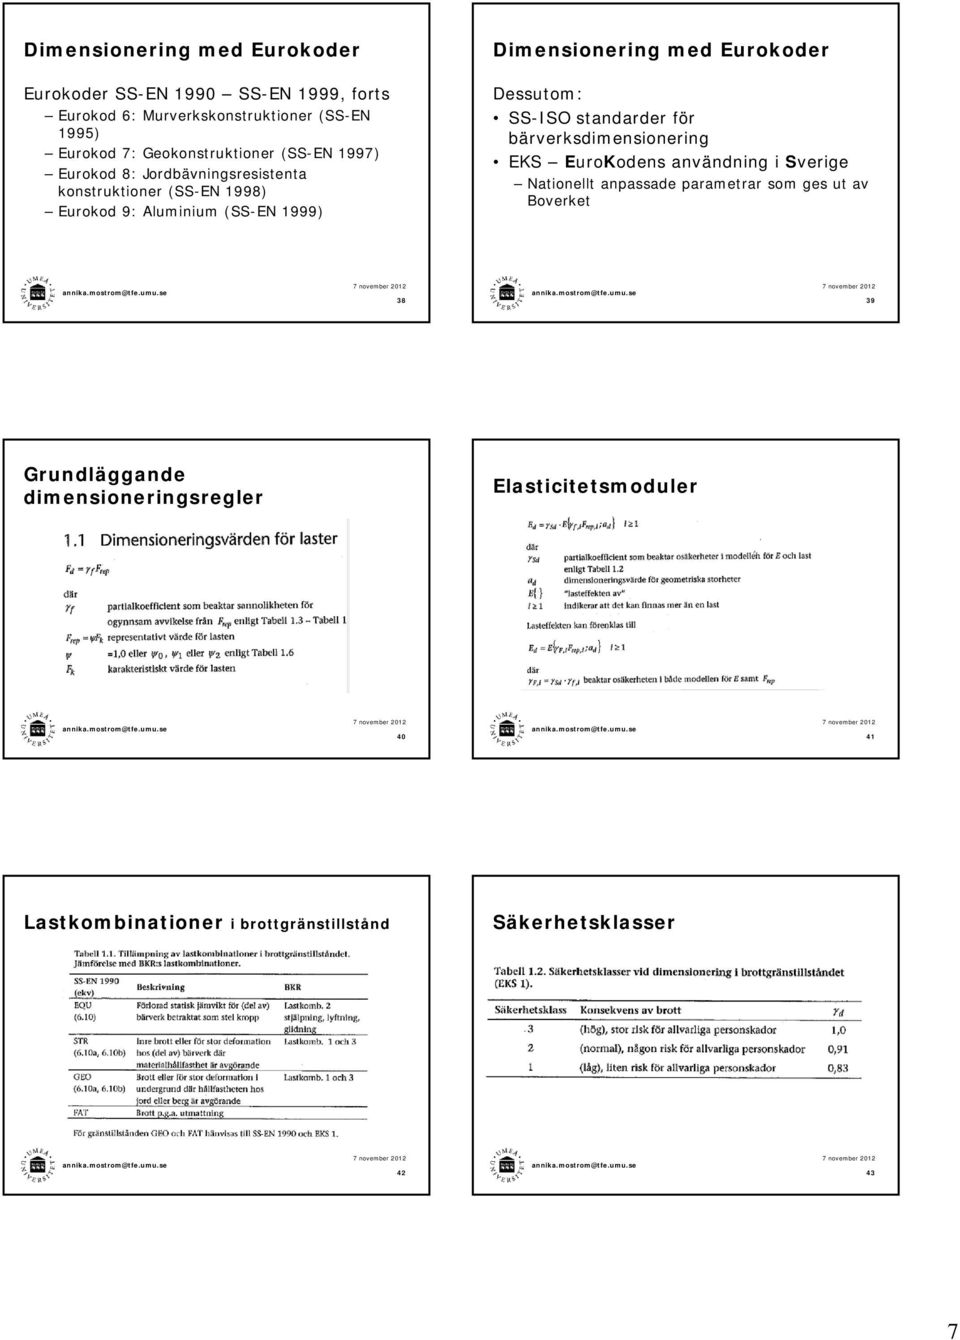 Dimensionering med Eurokoder Dessutom: SS-ISO standarder för bärverksdimensionering EKS EuroKodens användning i Sverige Nationellt